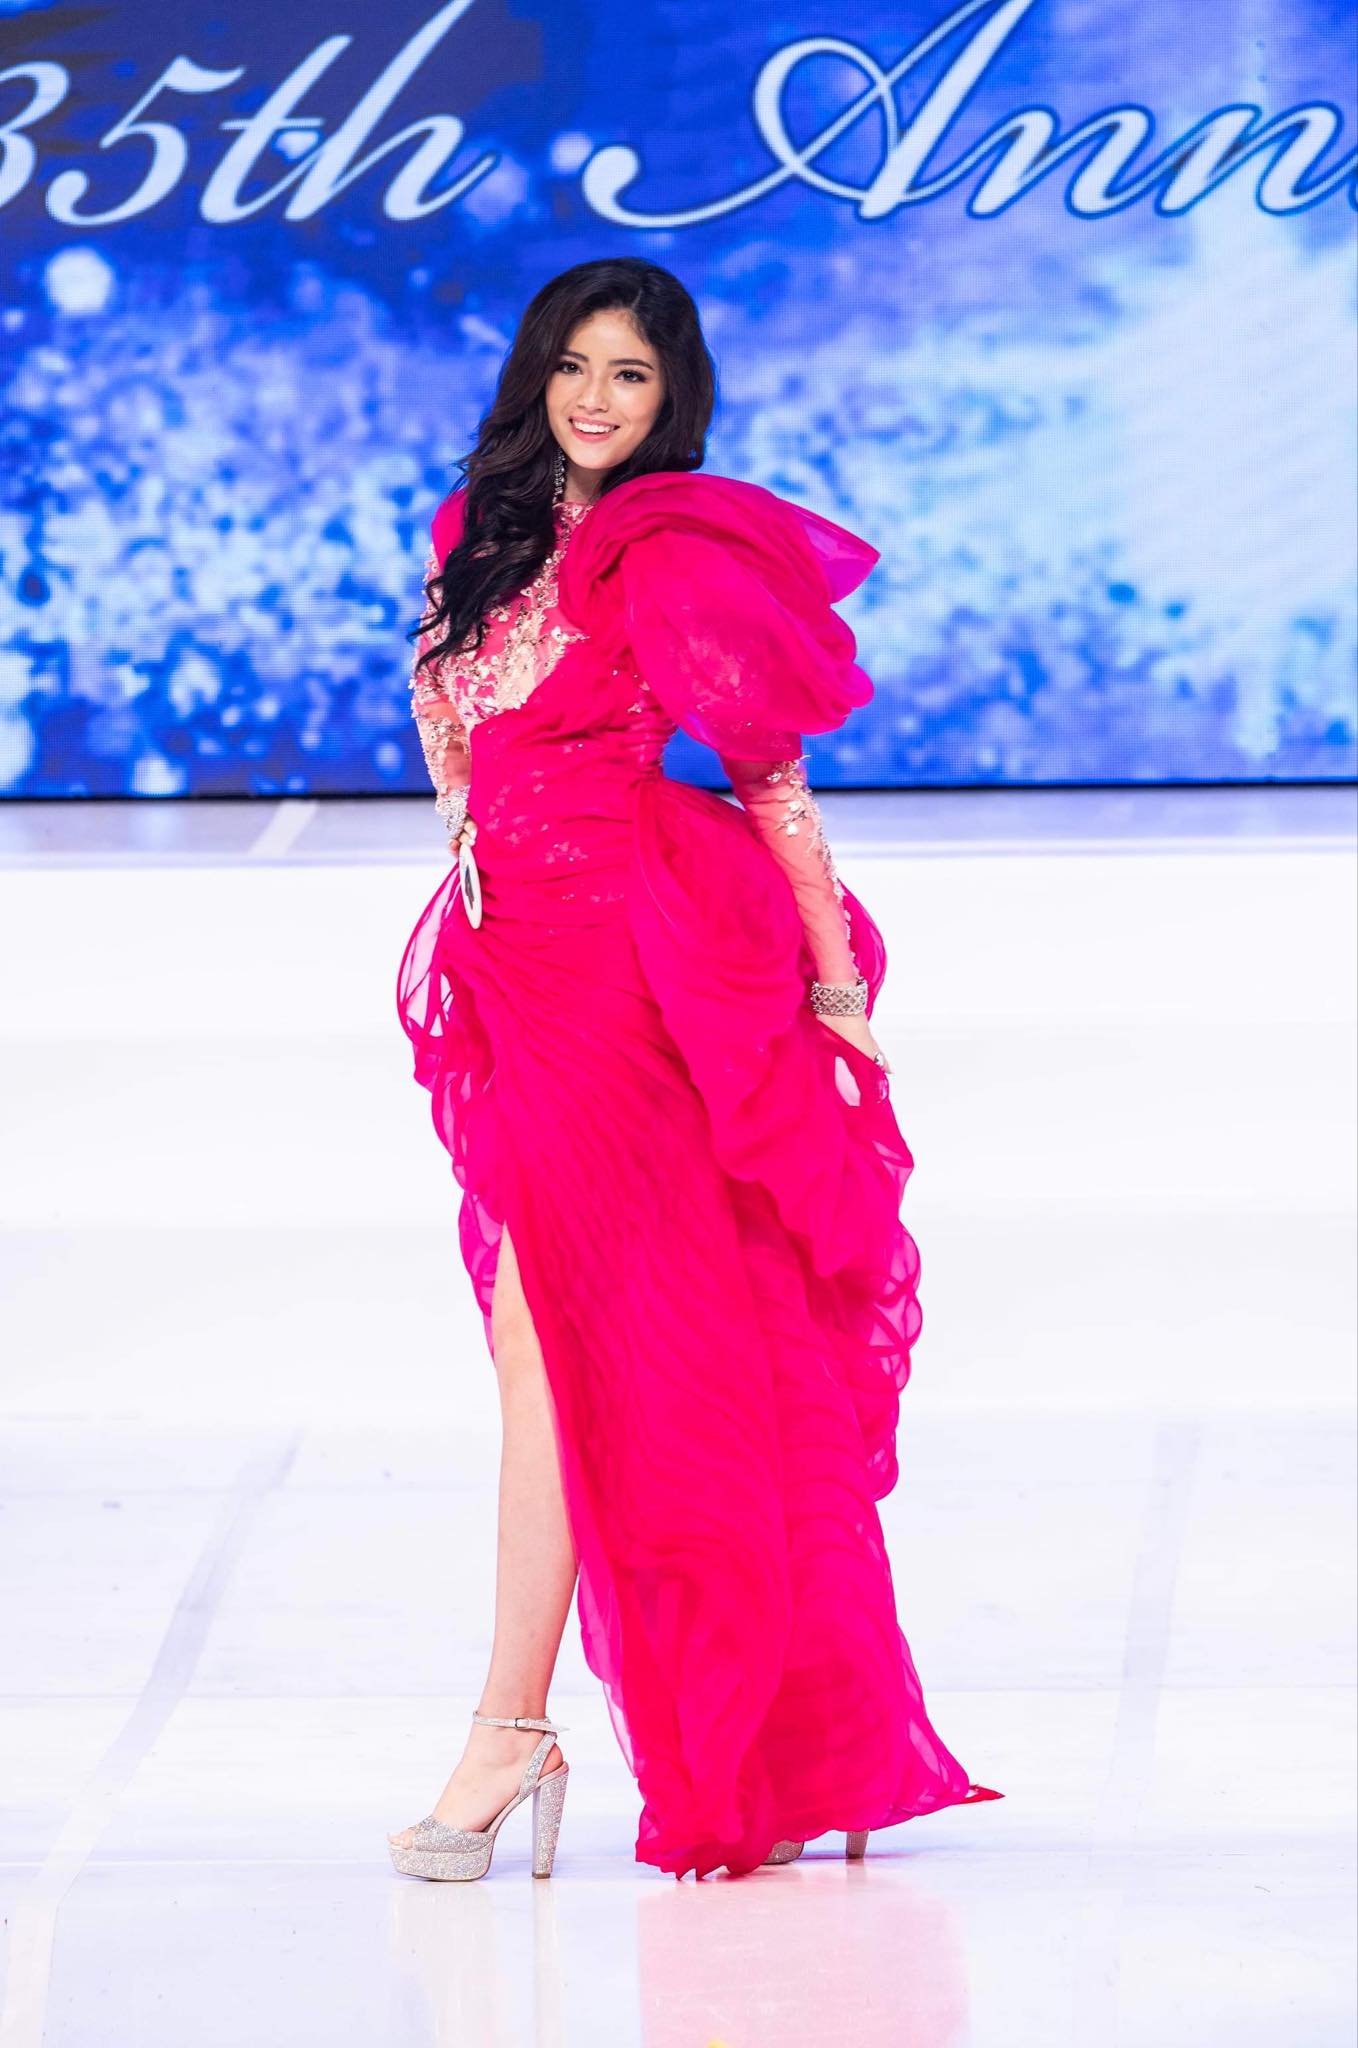 Nữ sinh lai Việt - Do Thái giành giải Miss Teen Asia USA tại Mỹ - Ảnh 7.